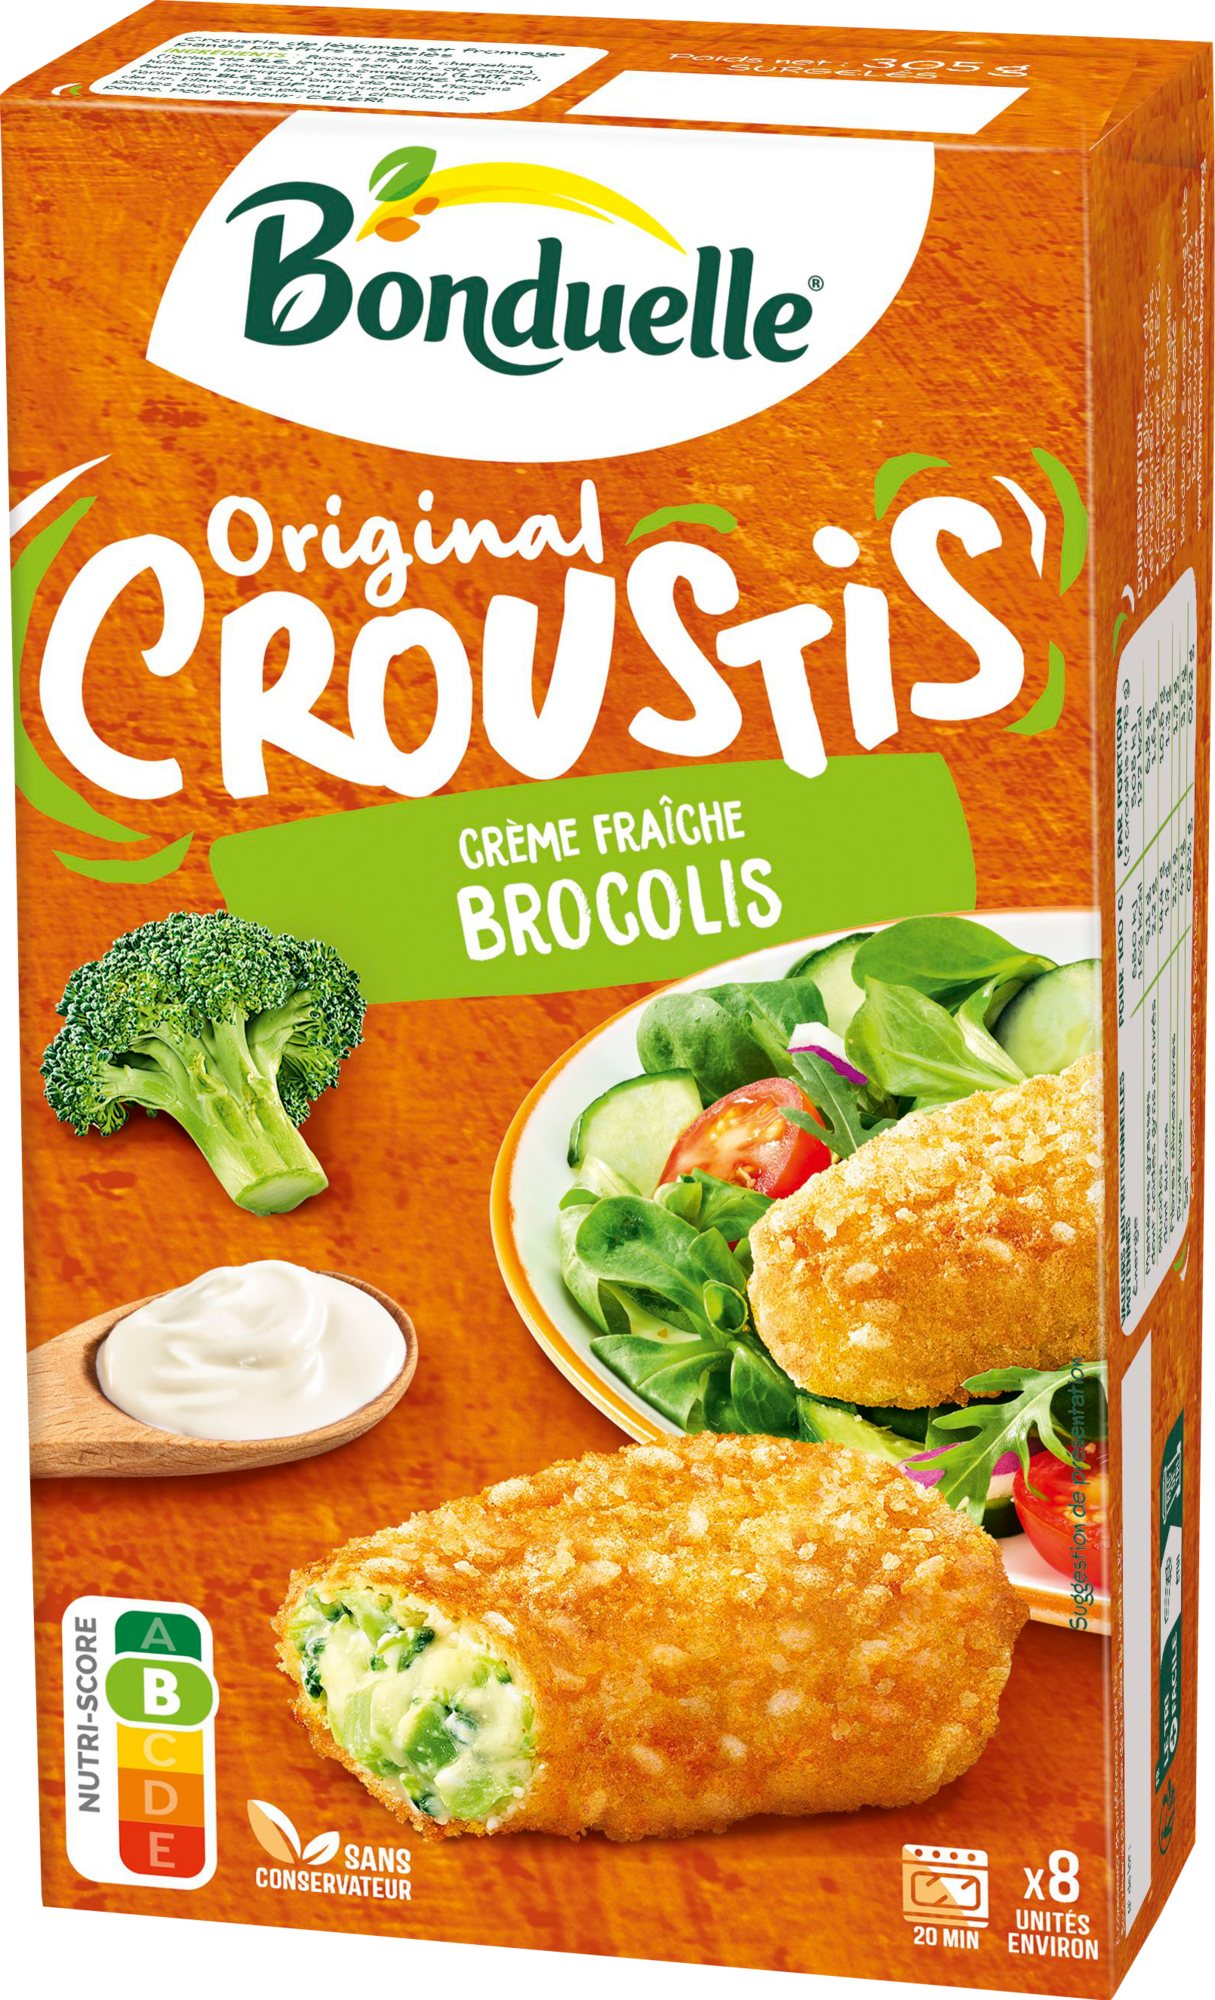 Original croustis crème fraiche brocolis surgelés